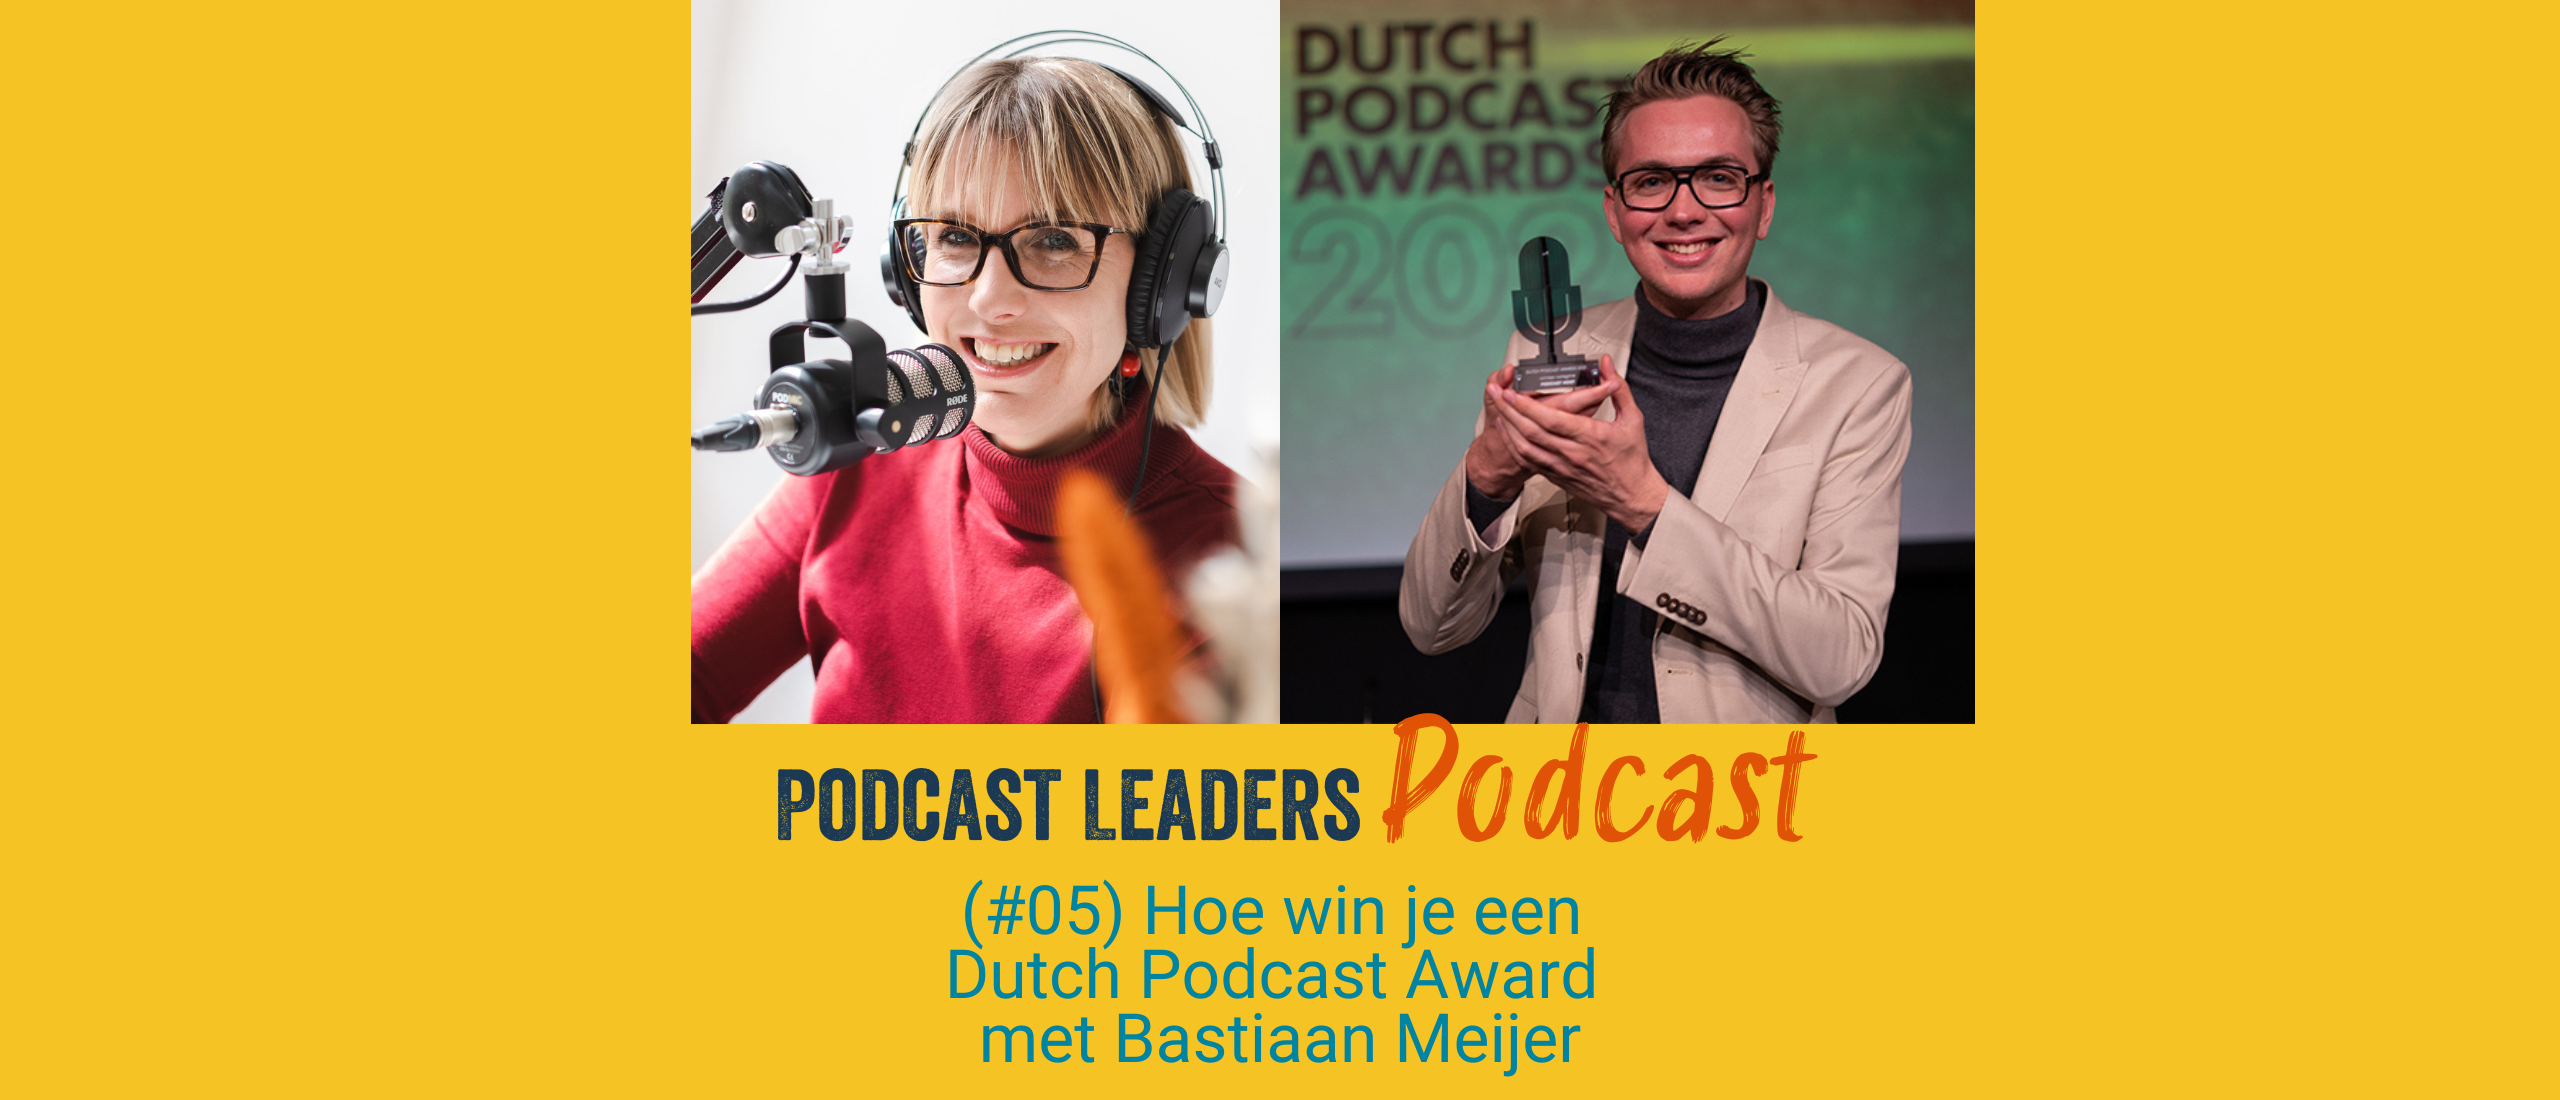 Hoe win je een  Dutch Podcast Award  met Bastiaan Meijer